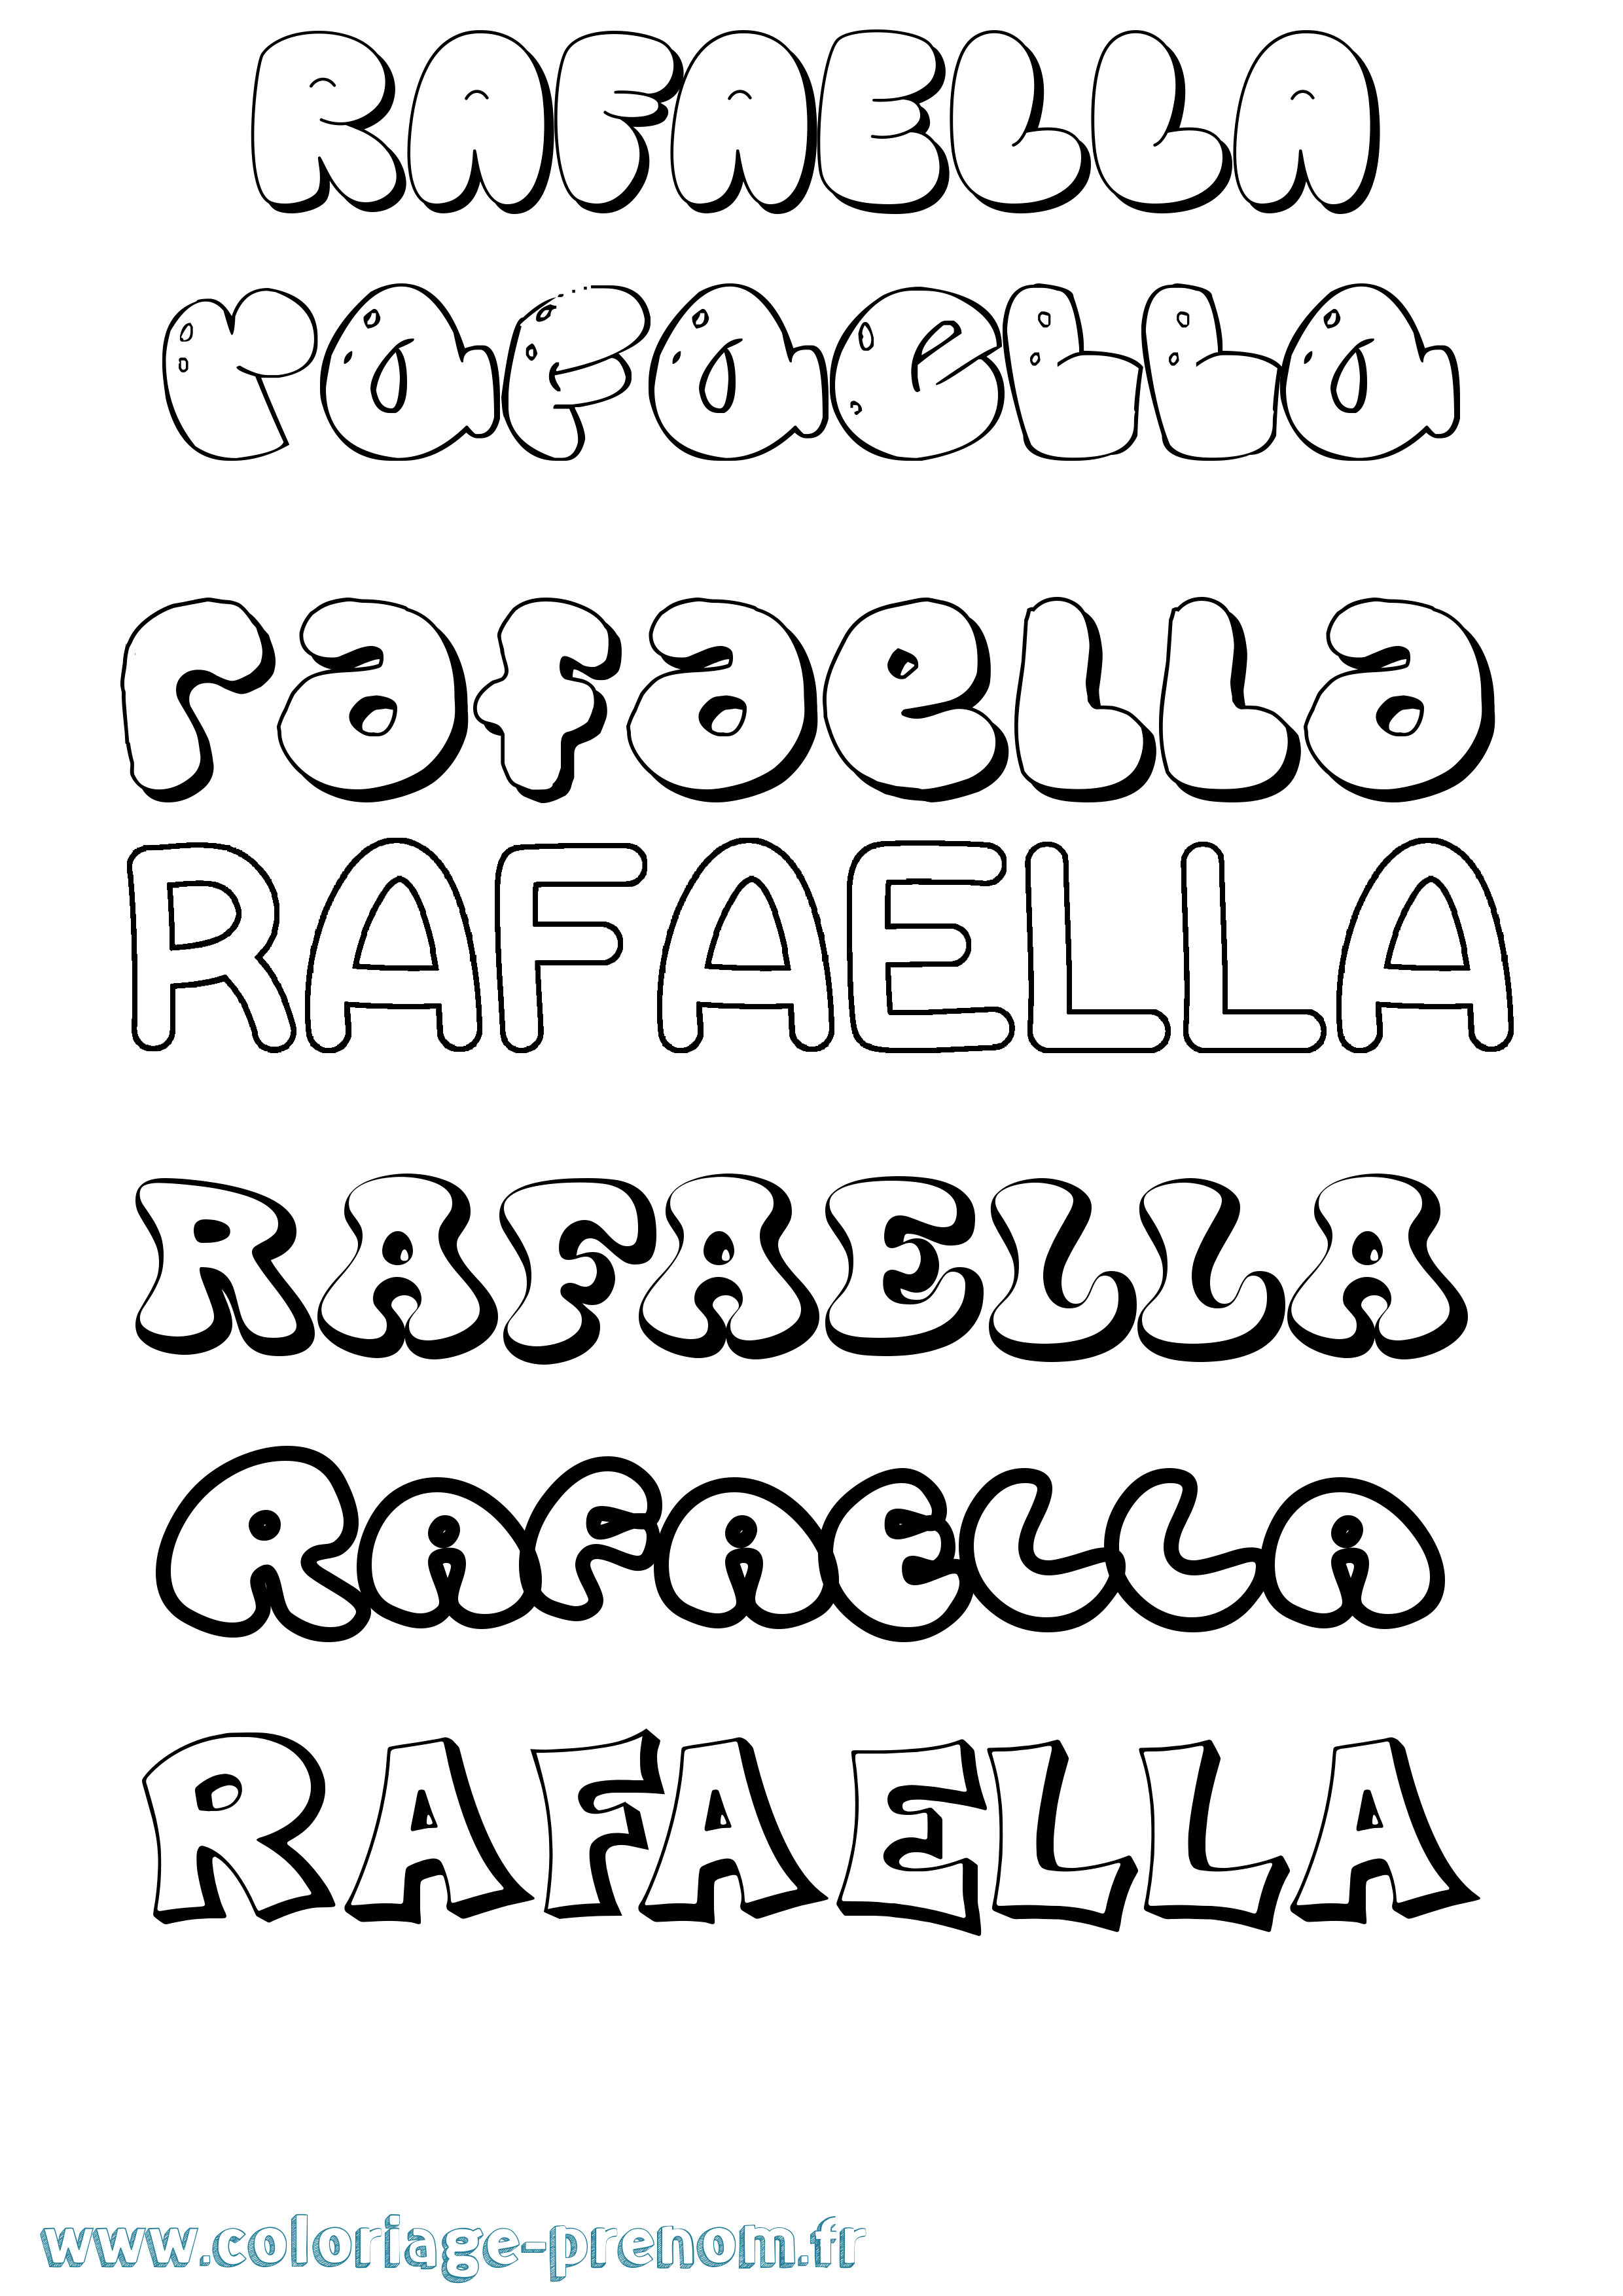 Coloriage prénom Rafaella Bubble